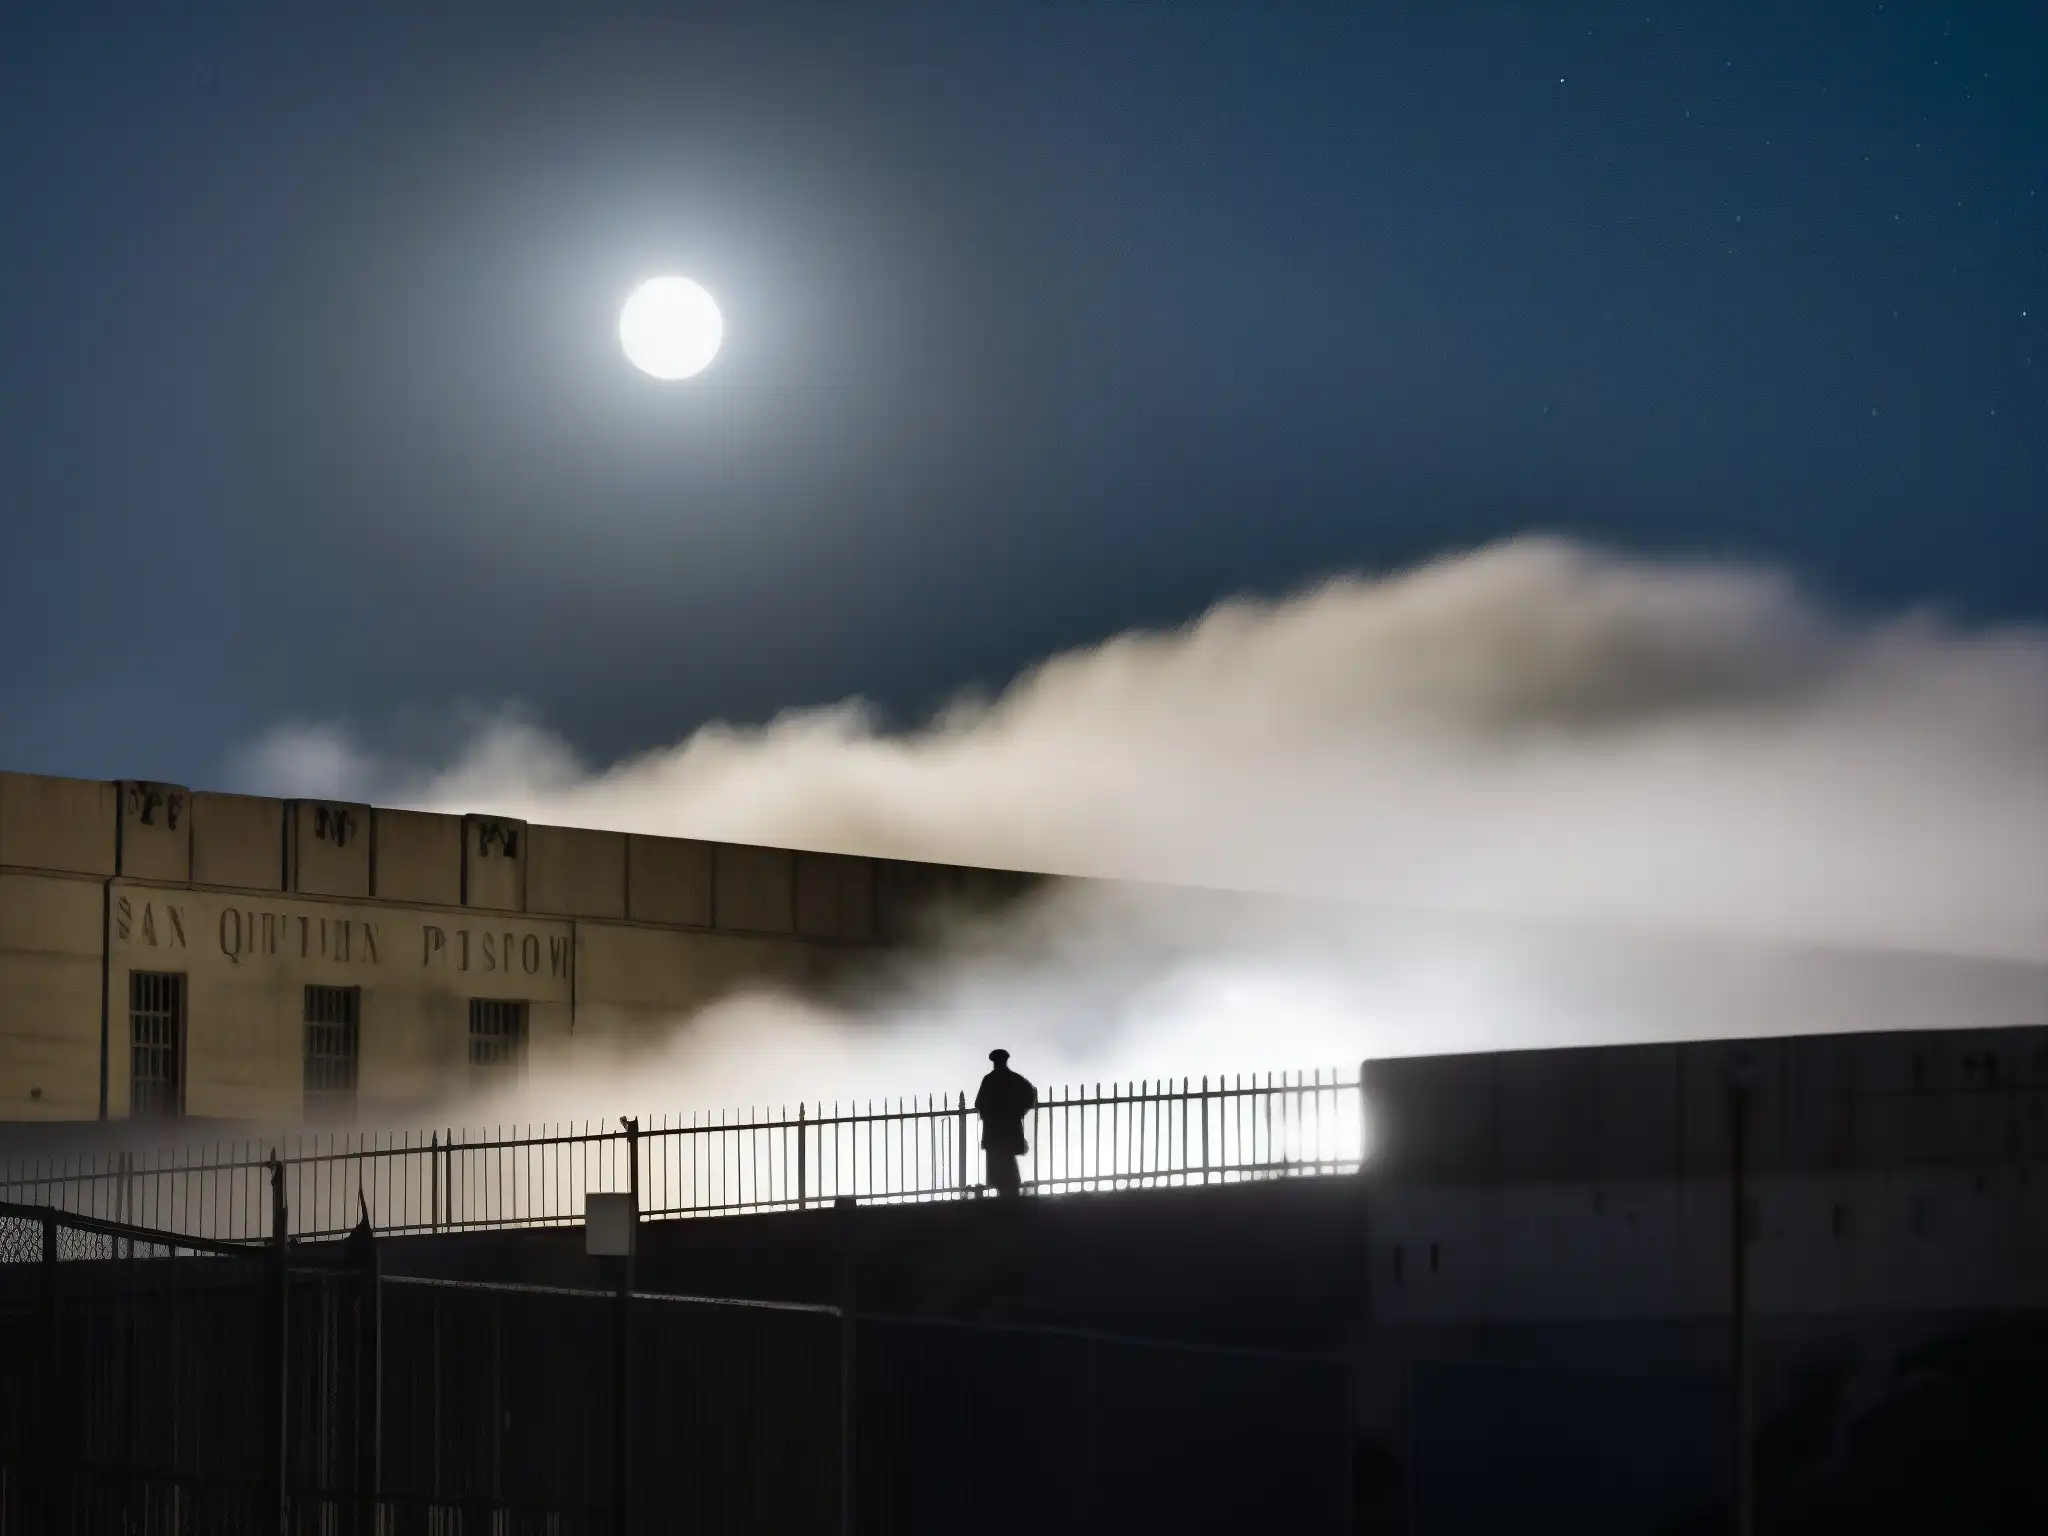 Una imagen en blanco y negro muestra la prisión de San Quentin de noche, con la luna brillante y una densa niebla